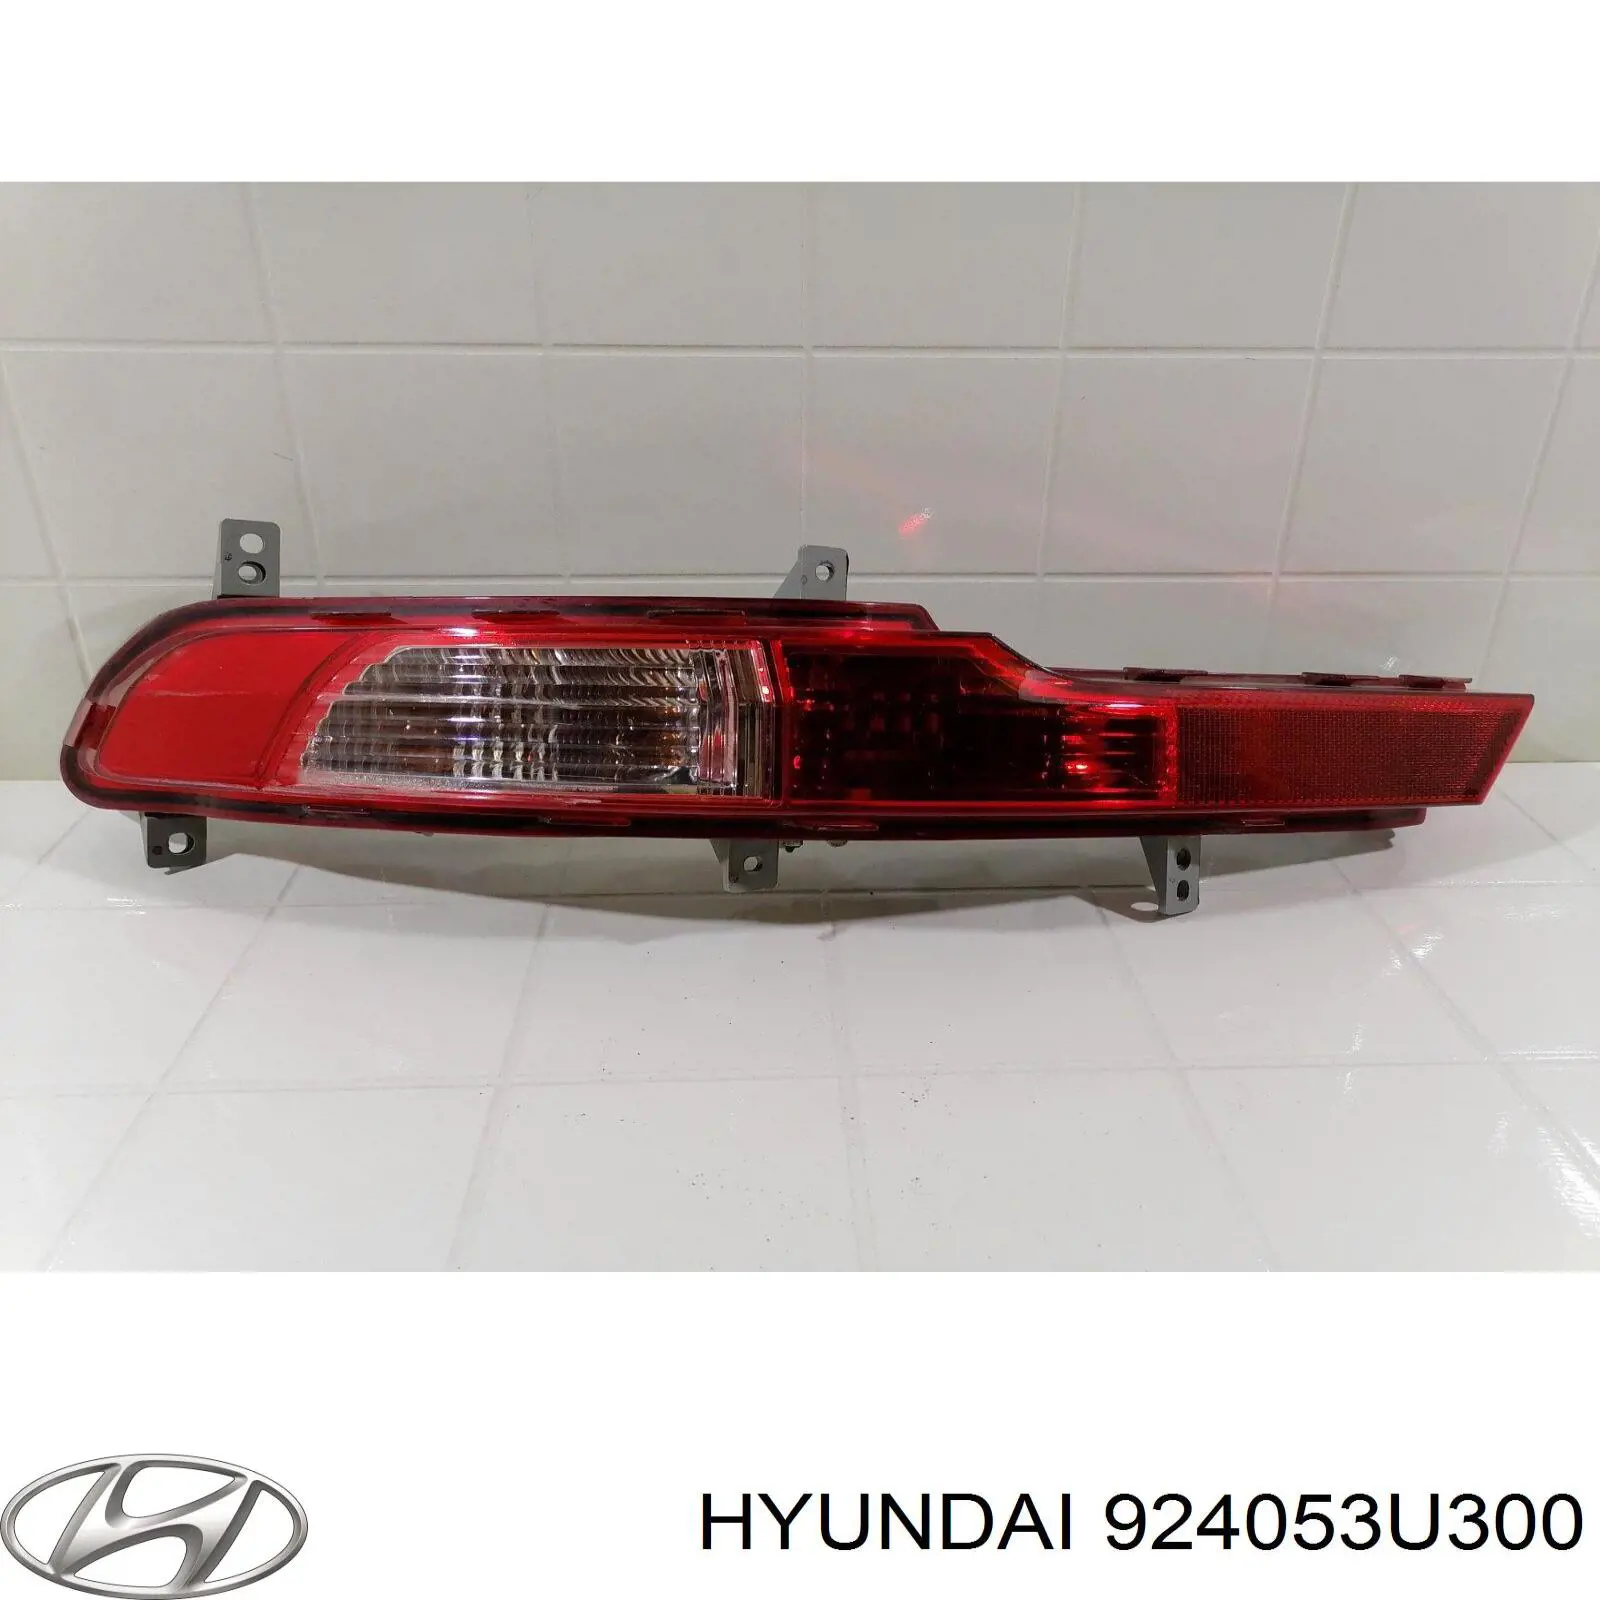 924053U300 Hyundai/Kia faro antiniebla trasero izquierdo